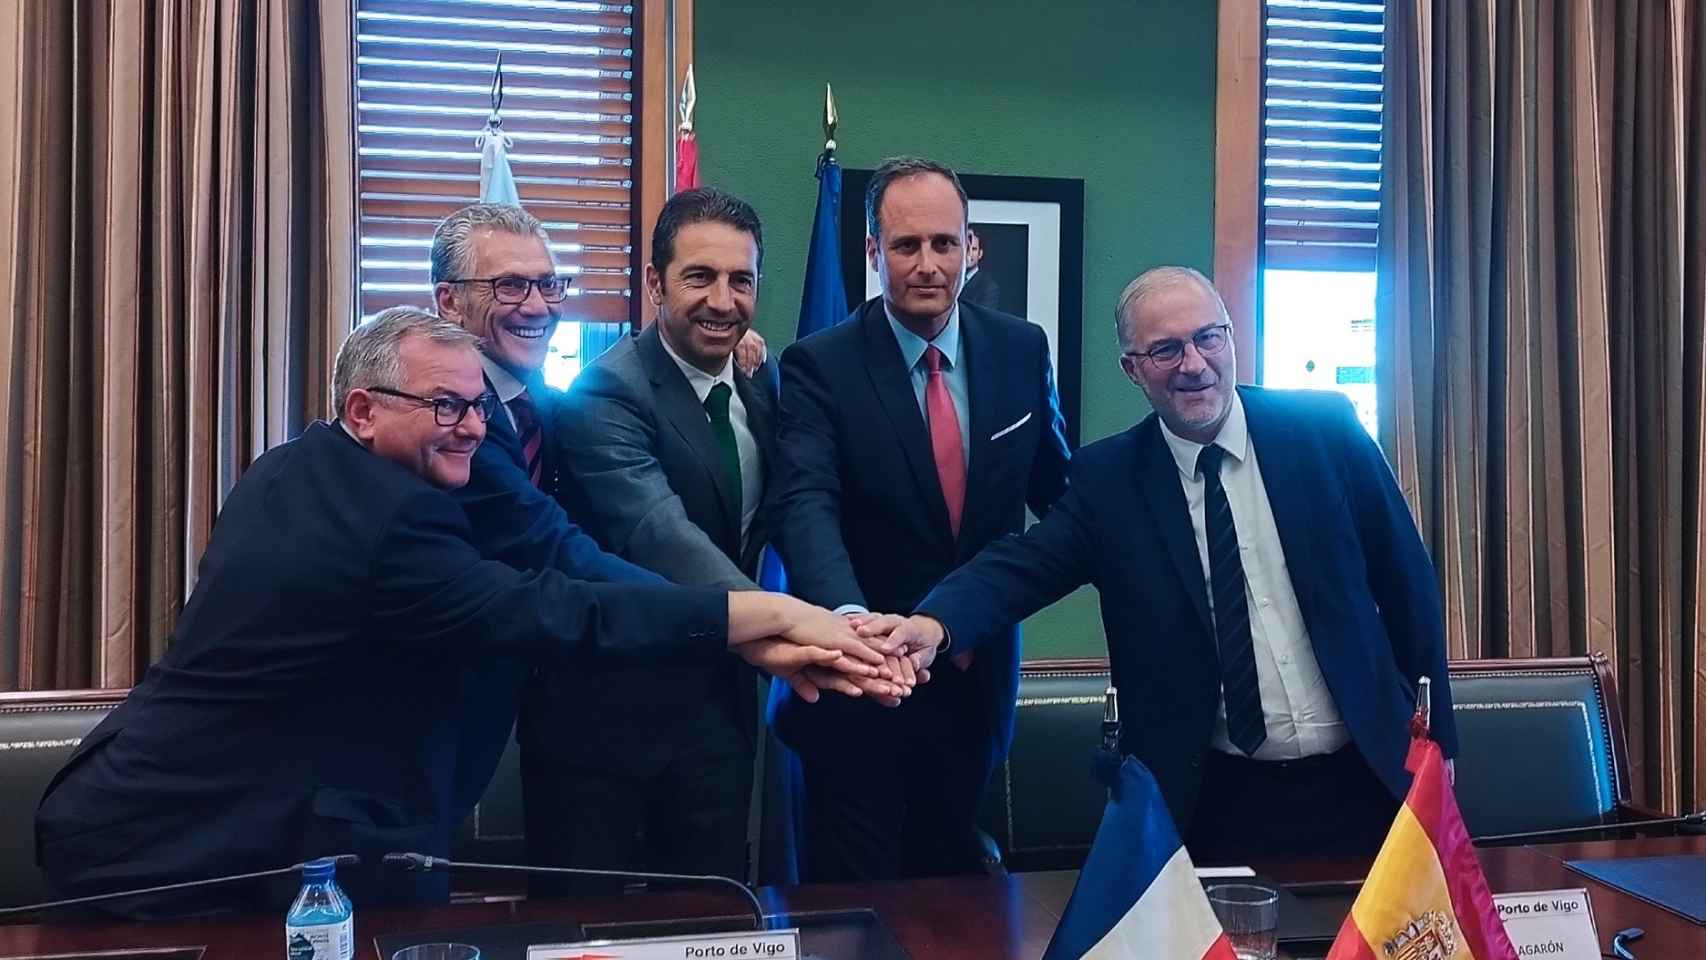 Un momento de la firma del acuerdo entre representantes del puerto vigués y francés.